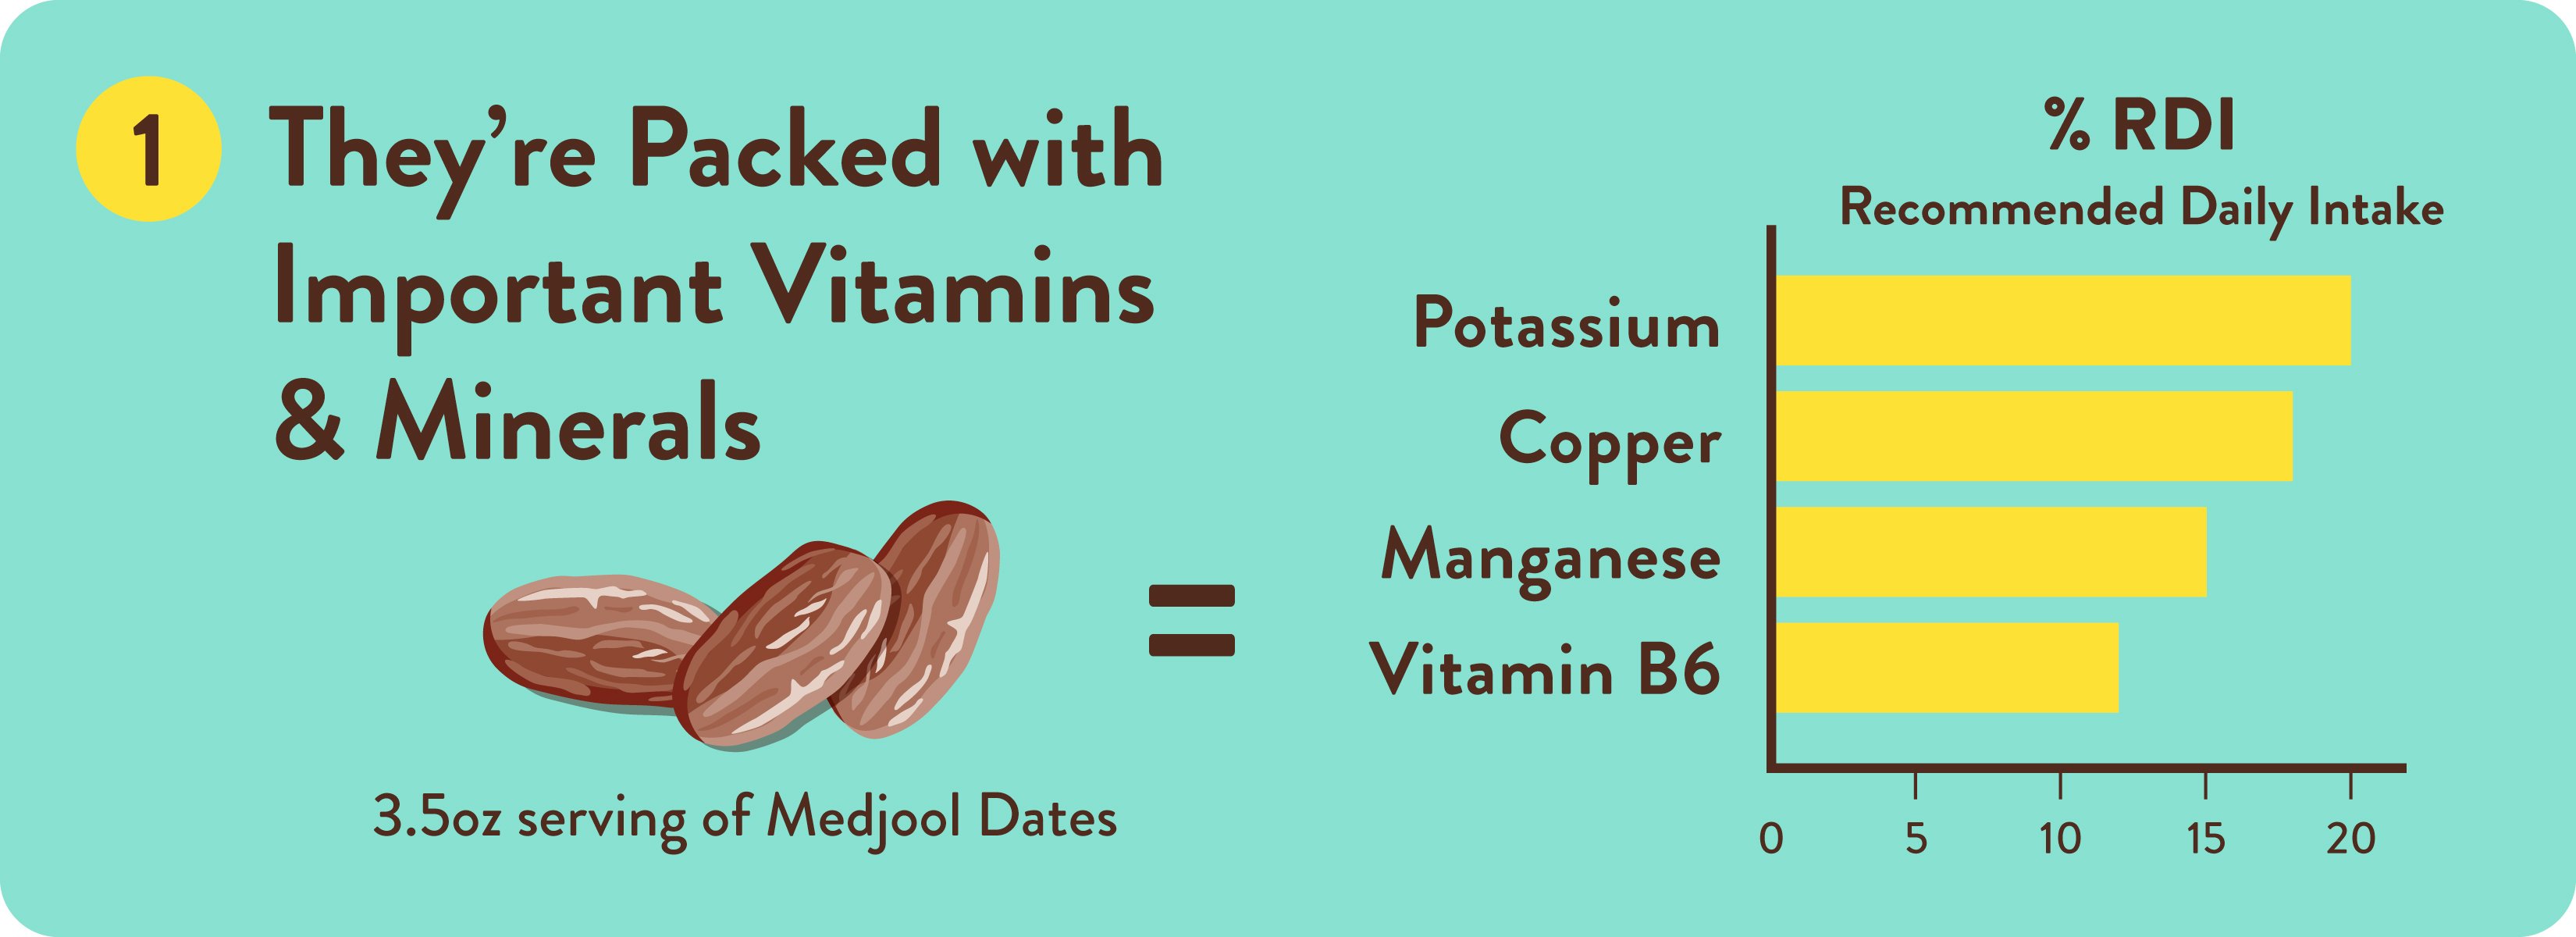 medjool dates, vitamins